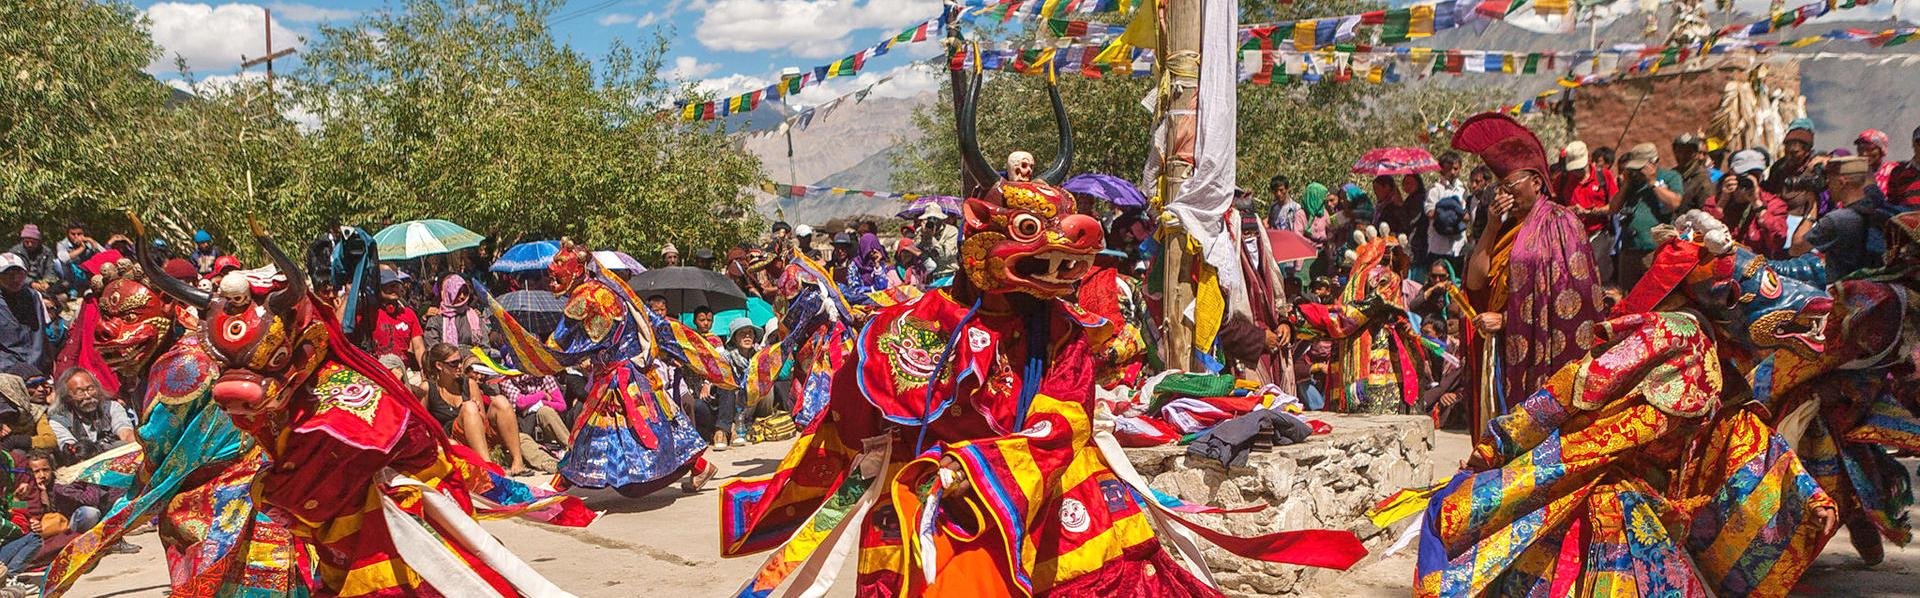 Traditionele dans tijdens het Phyang Tsedup Festival in India